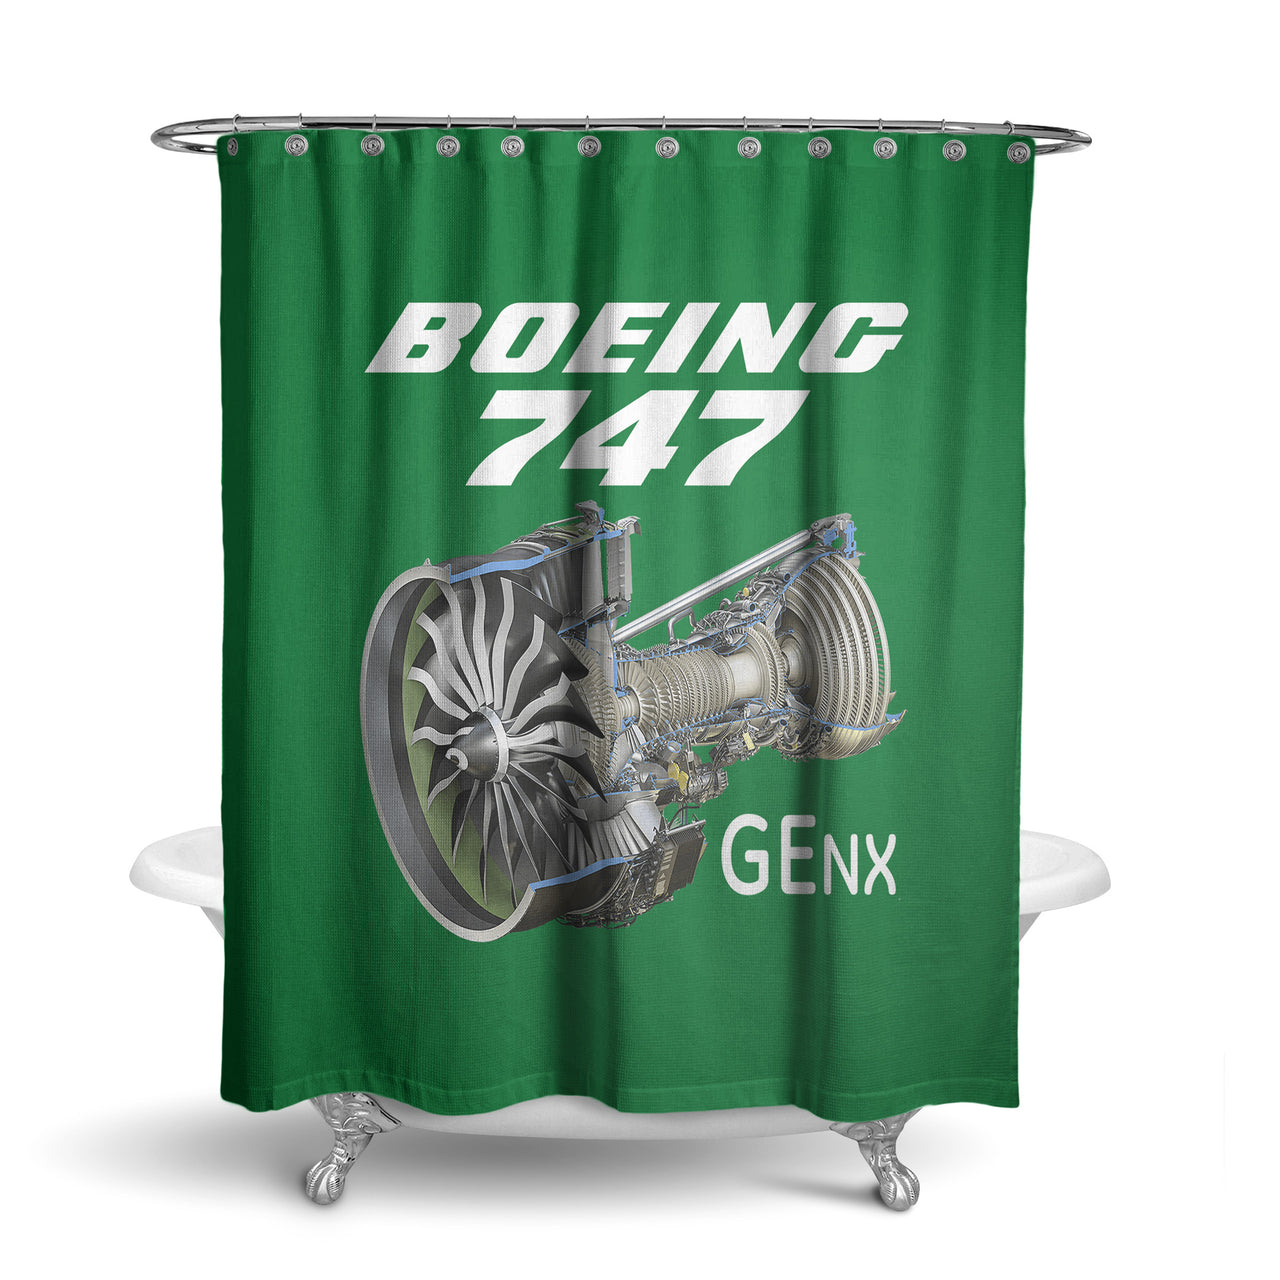 Boeing 747 & GENX Engine Designed Shower Curtains